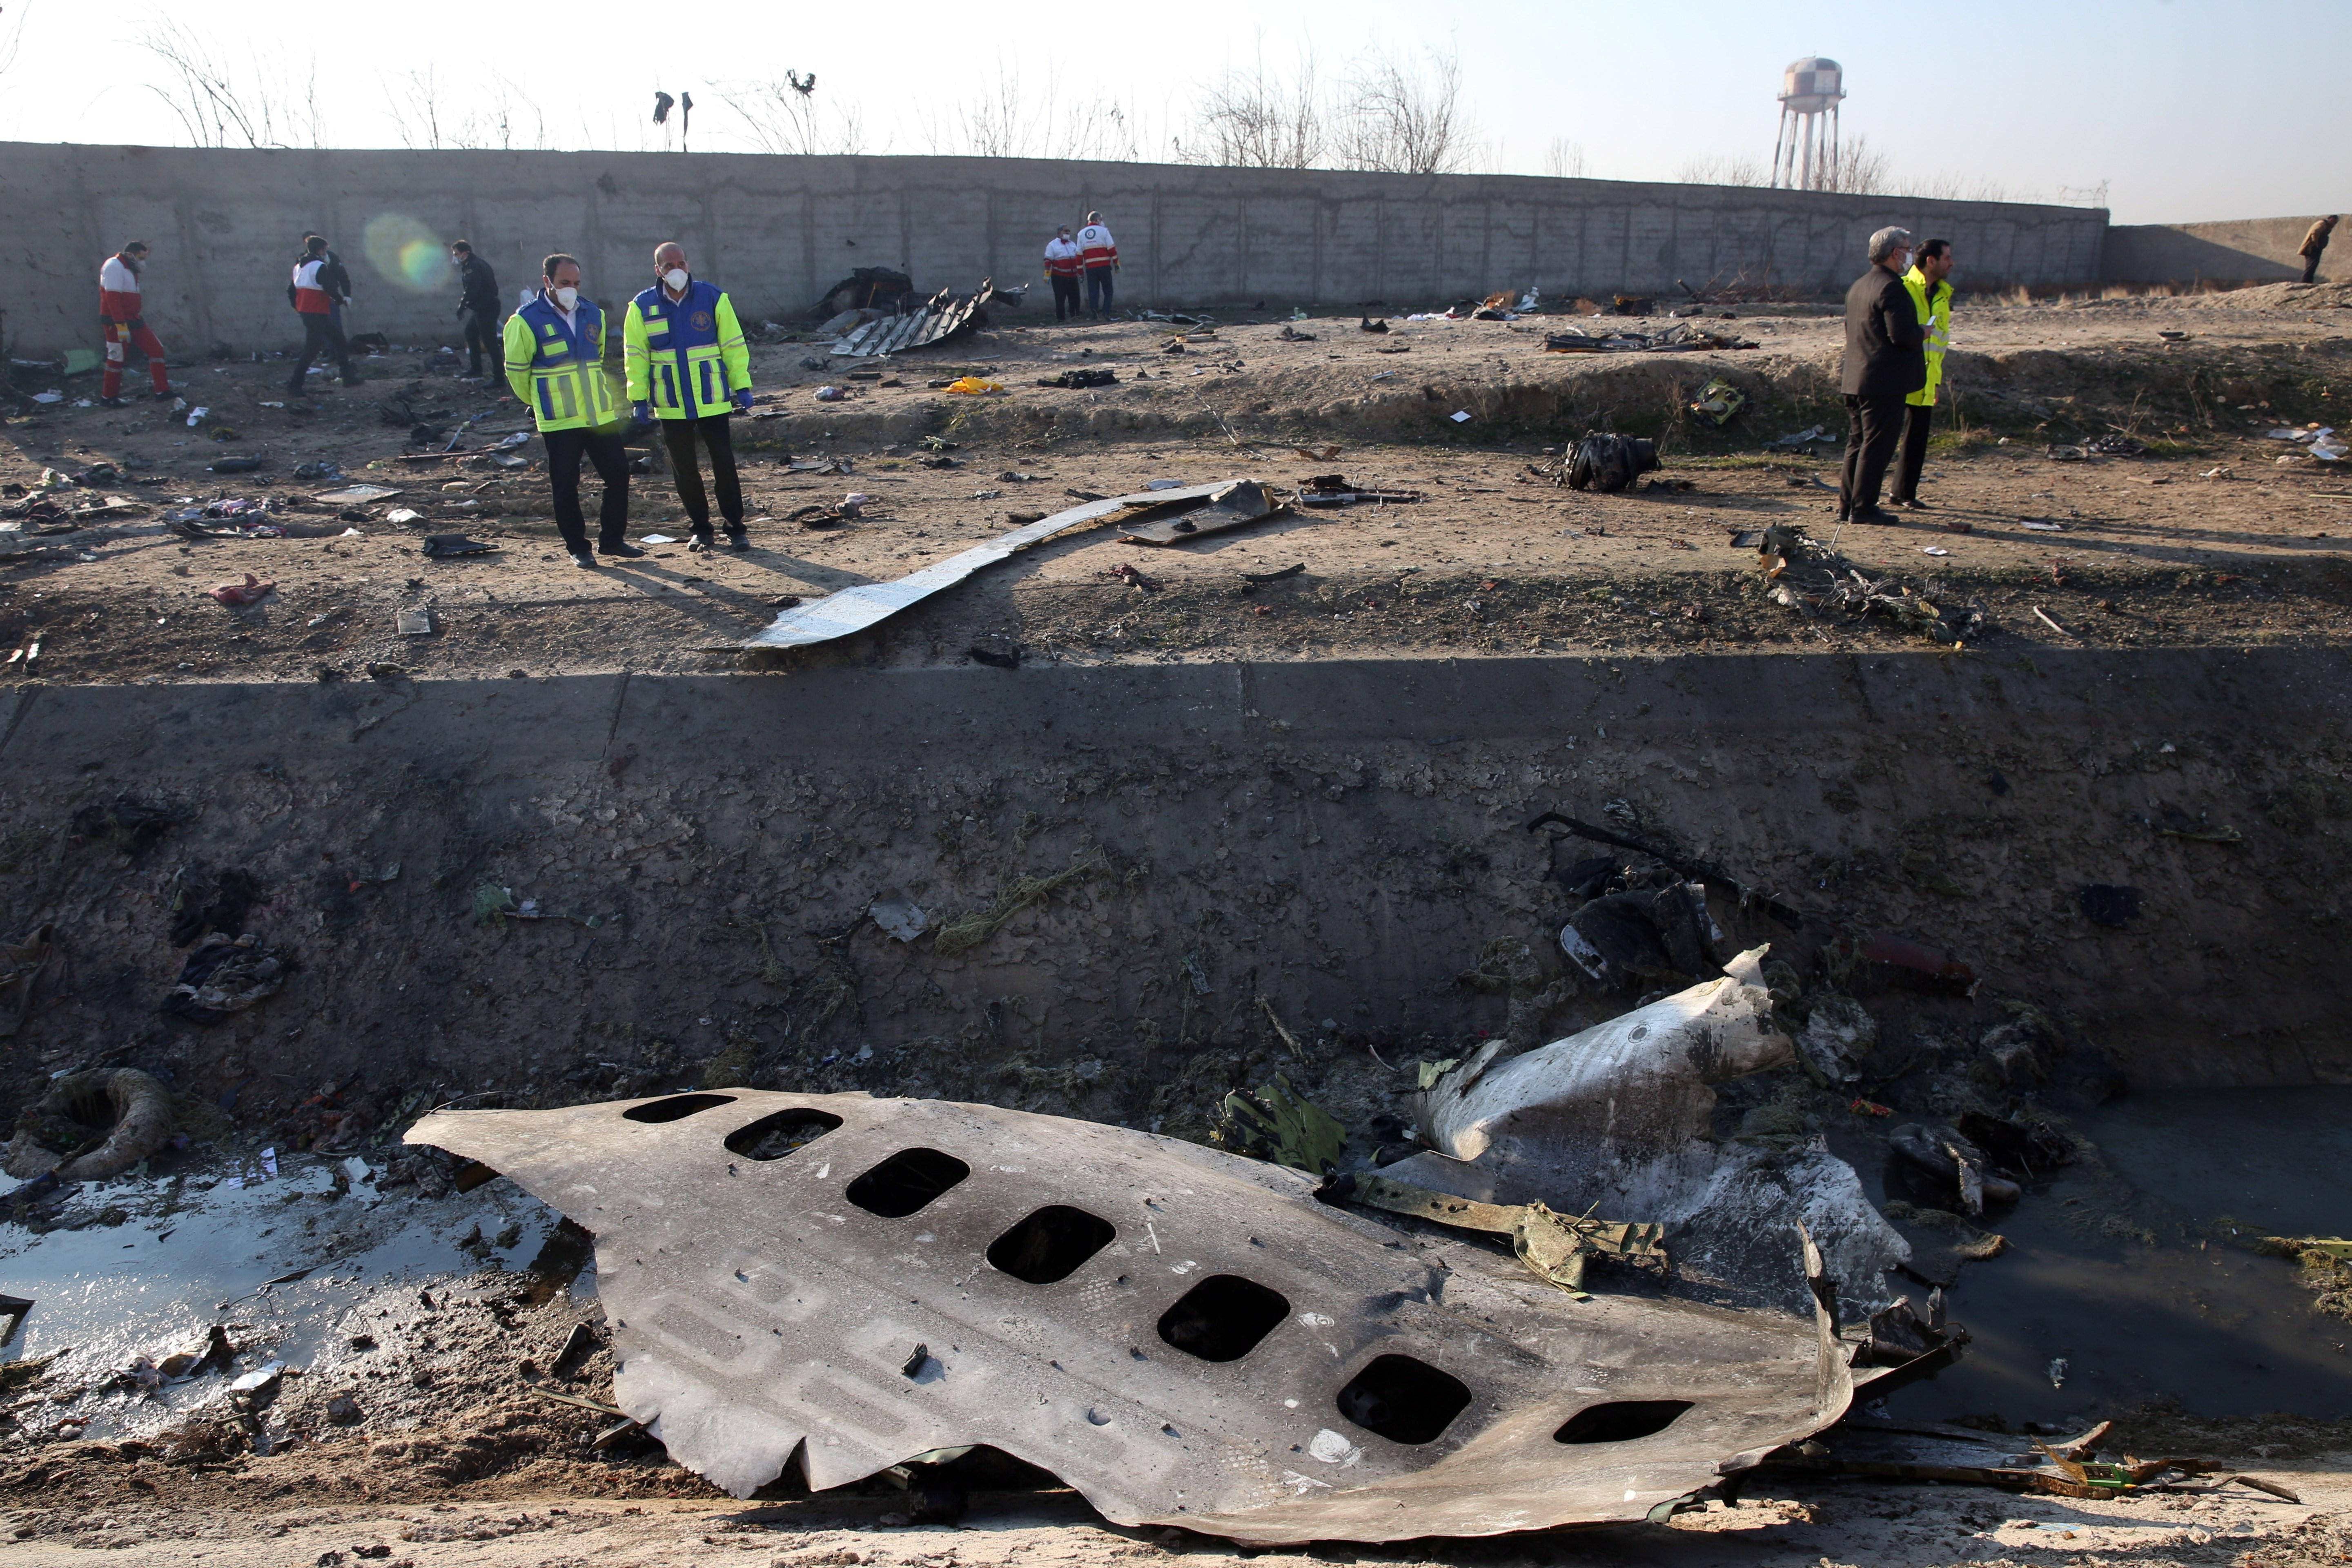 -FOTODELDIA- ABD01. SHAHRIAR (IRÁN), 08/01/2020.- Miembros de los servicios de emergencia observan parte del fuselahe del Boeing 737 de la compañía ucraniana UIA que se ha estrellado esta madrugada en Teherán (Israel). Nacionales de siete países, entre ellos 63 canadienses, han muerto en el accidente aéreo. EFE/ Abedin Taherkenareh